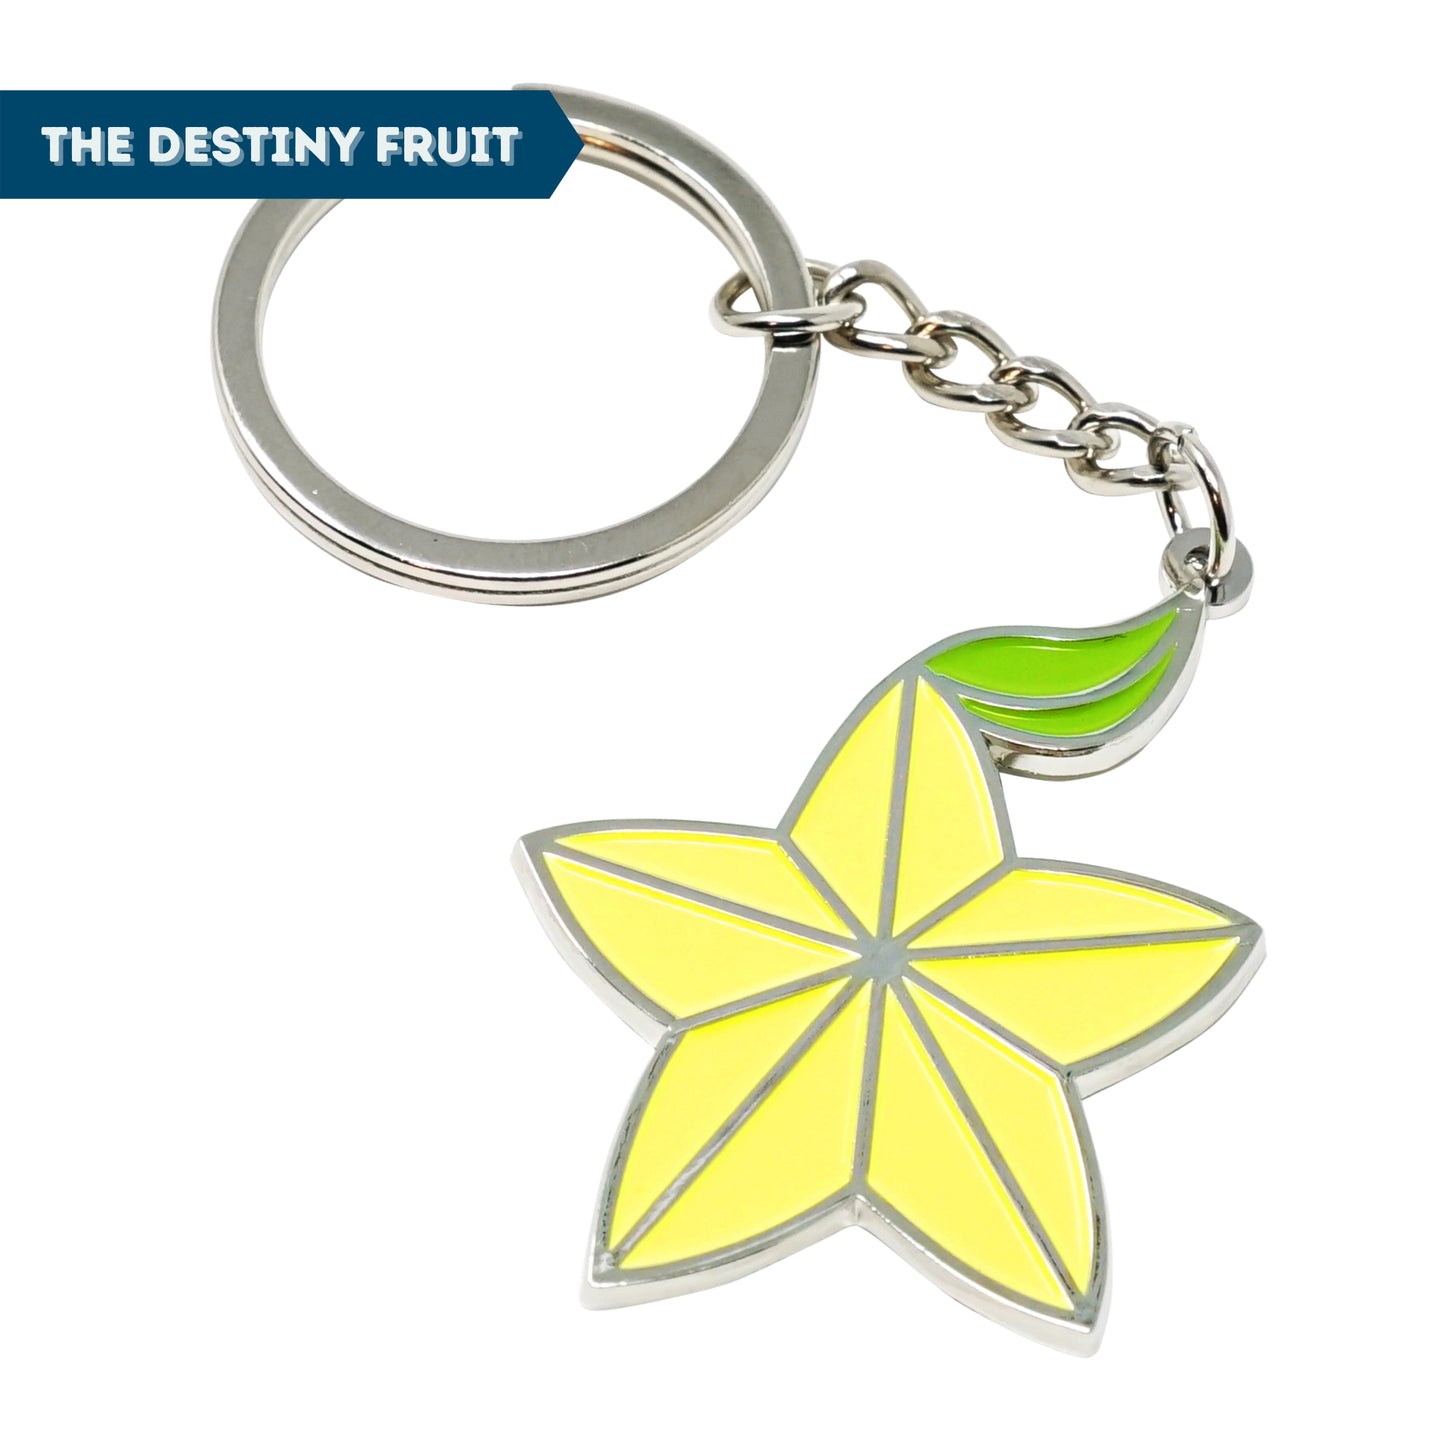 Kingdom Key USB + Destiny Fruit